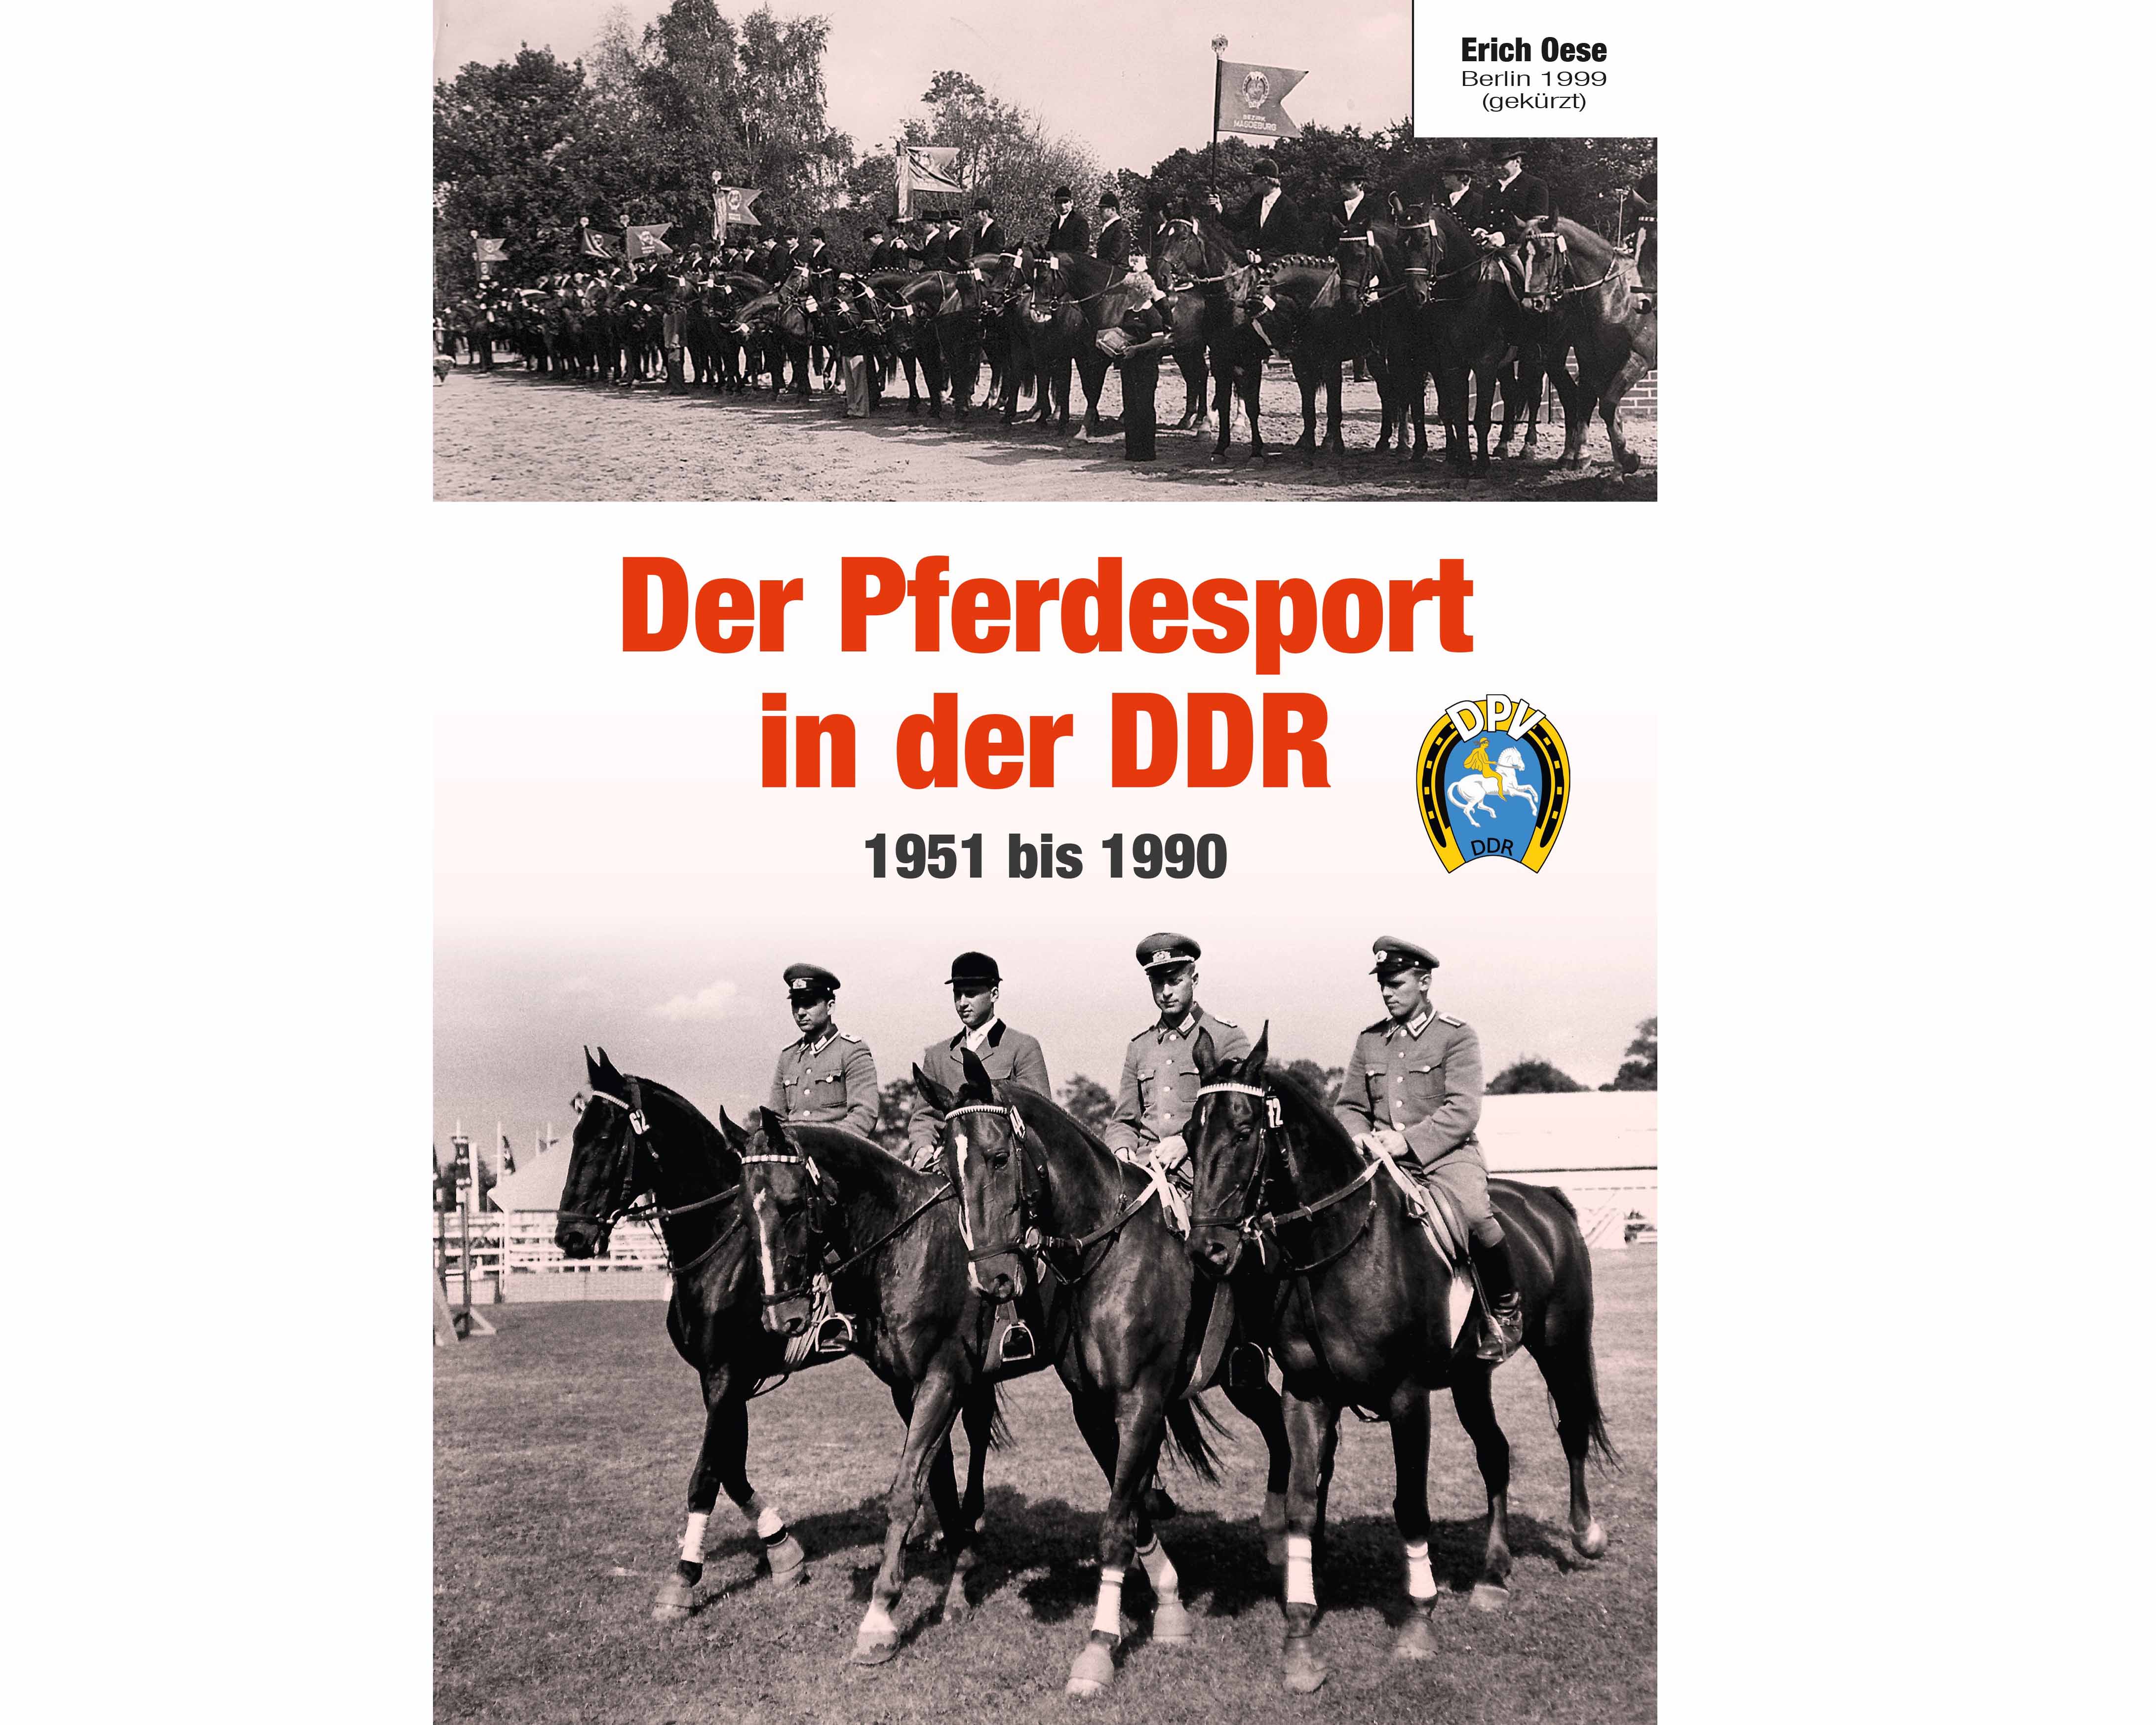 Buchpräsentation "Reiten in der DDR von 1951-1990"